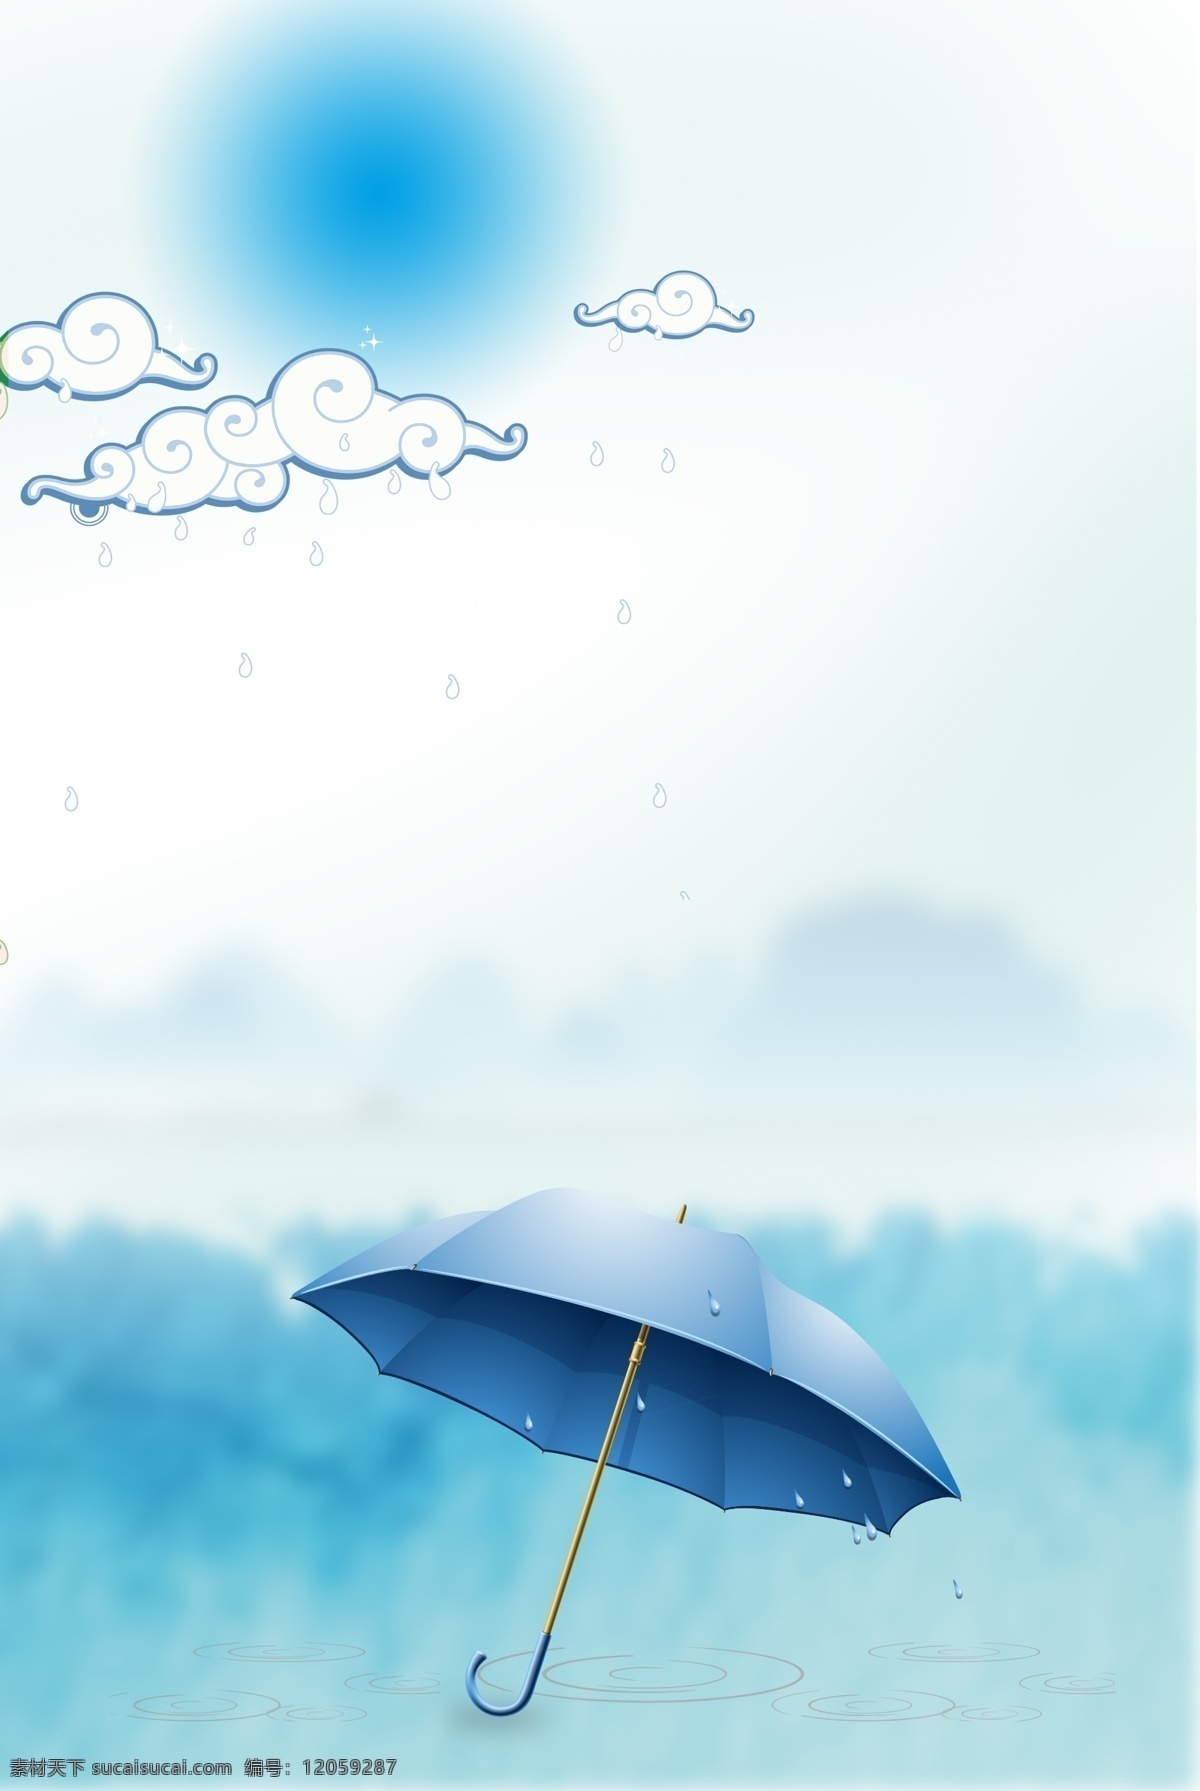 白露 二十四节气 简约 清新 雨伞 海报 传统 习俗 云 雨滴